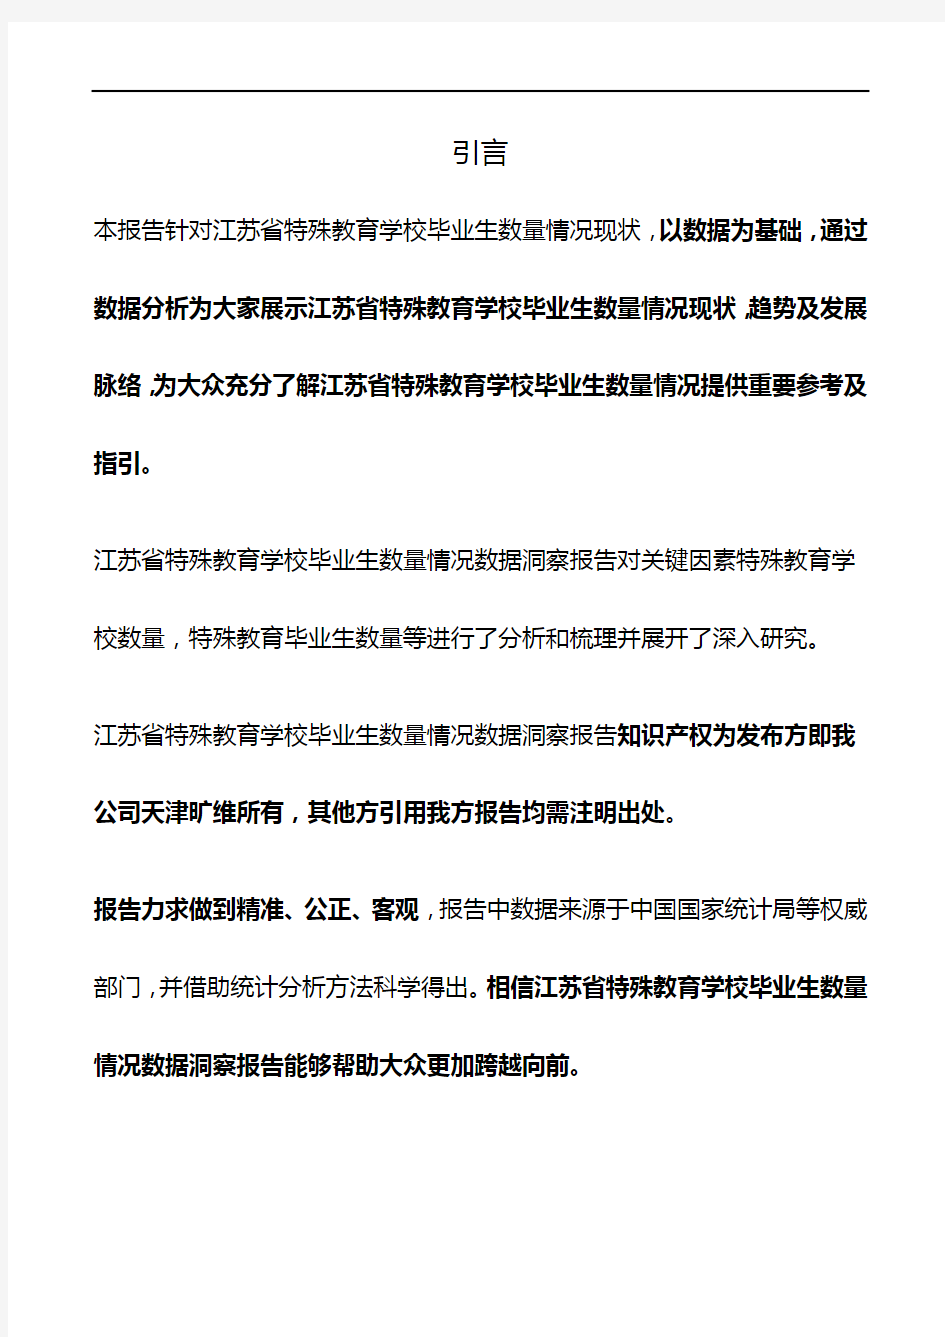 江苏省特殊教育学校毕业生数量情况3年数据洞察报告2020版